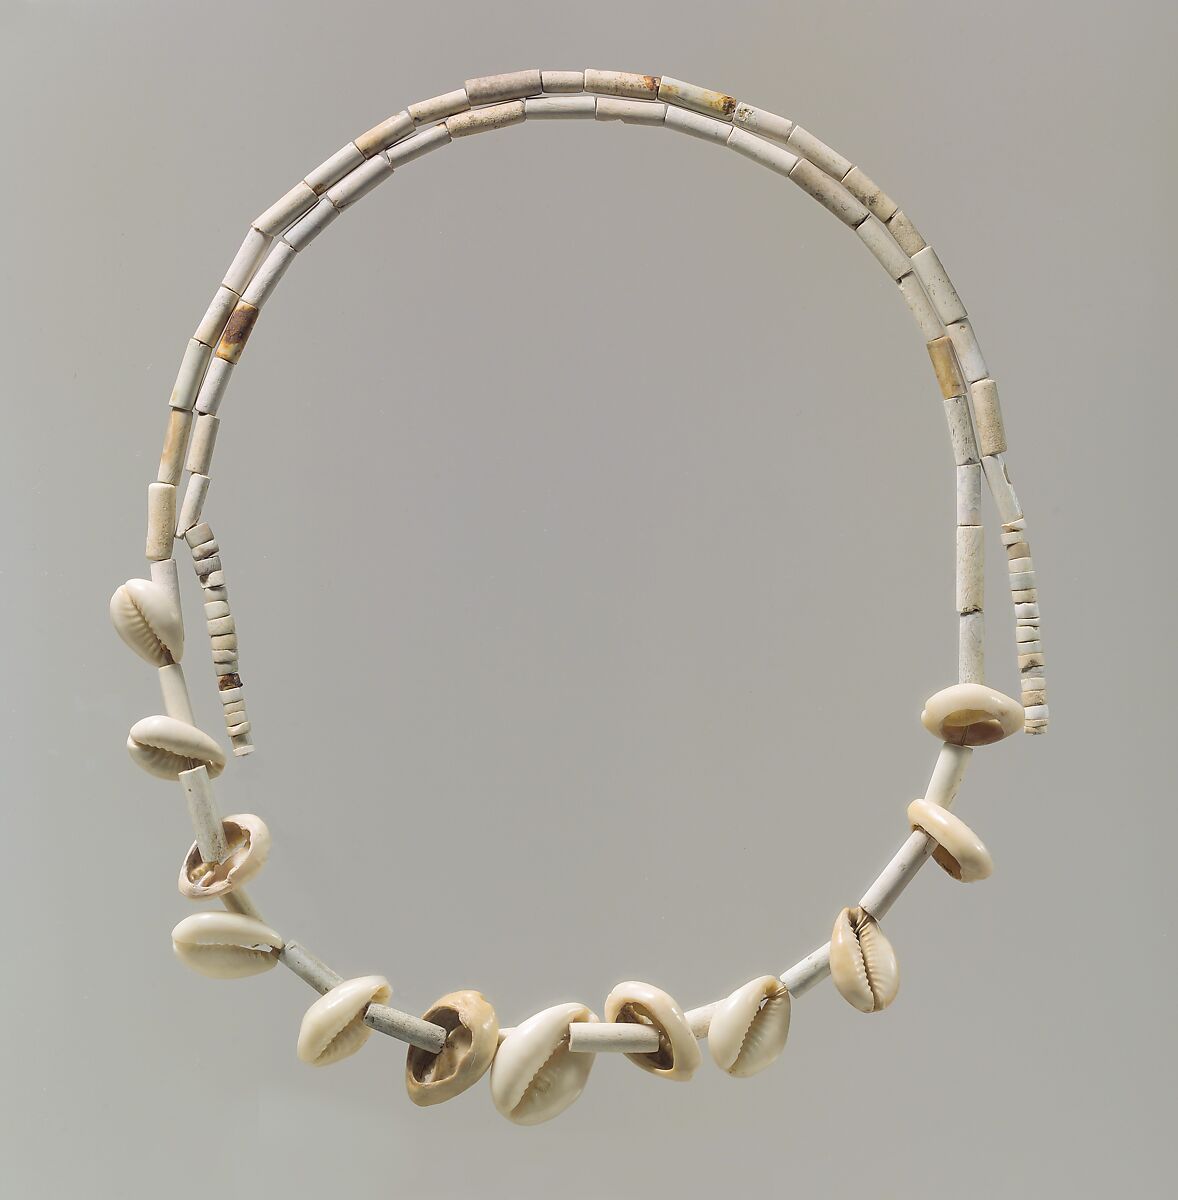 Beads, Shell, stone, Iran 